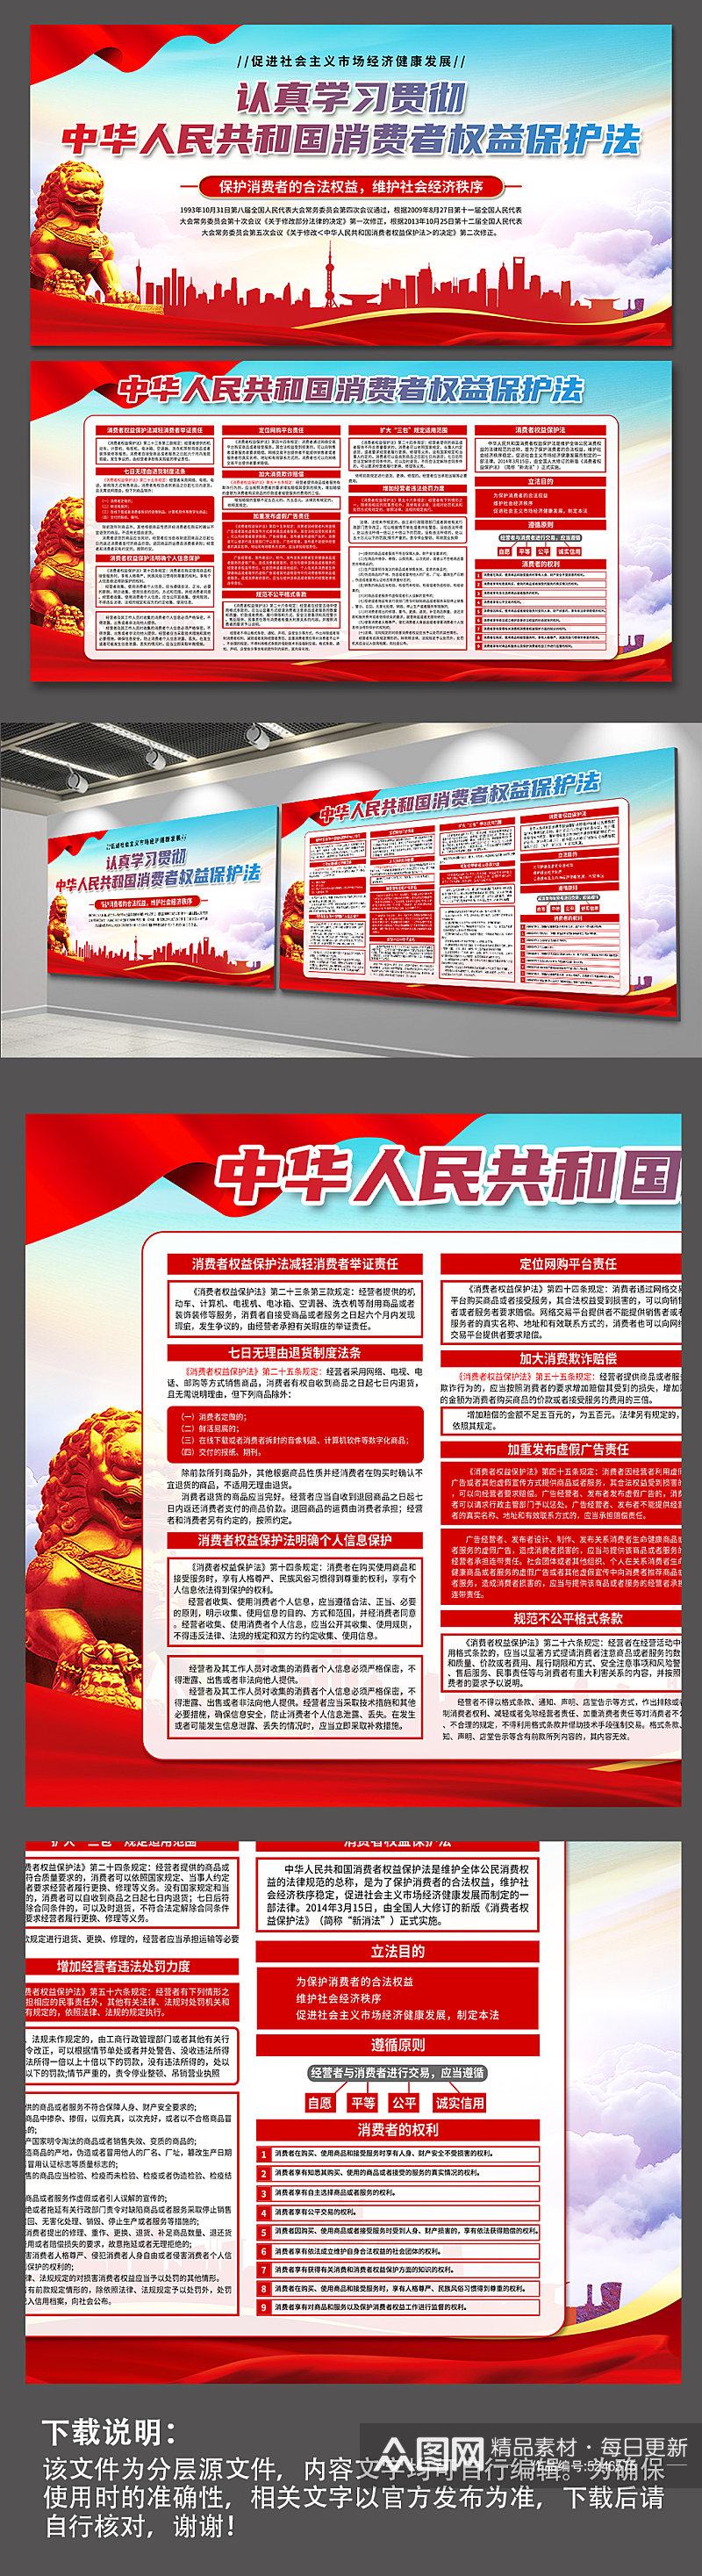 高档中华人民共和国消费者权益保护法展板素材